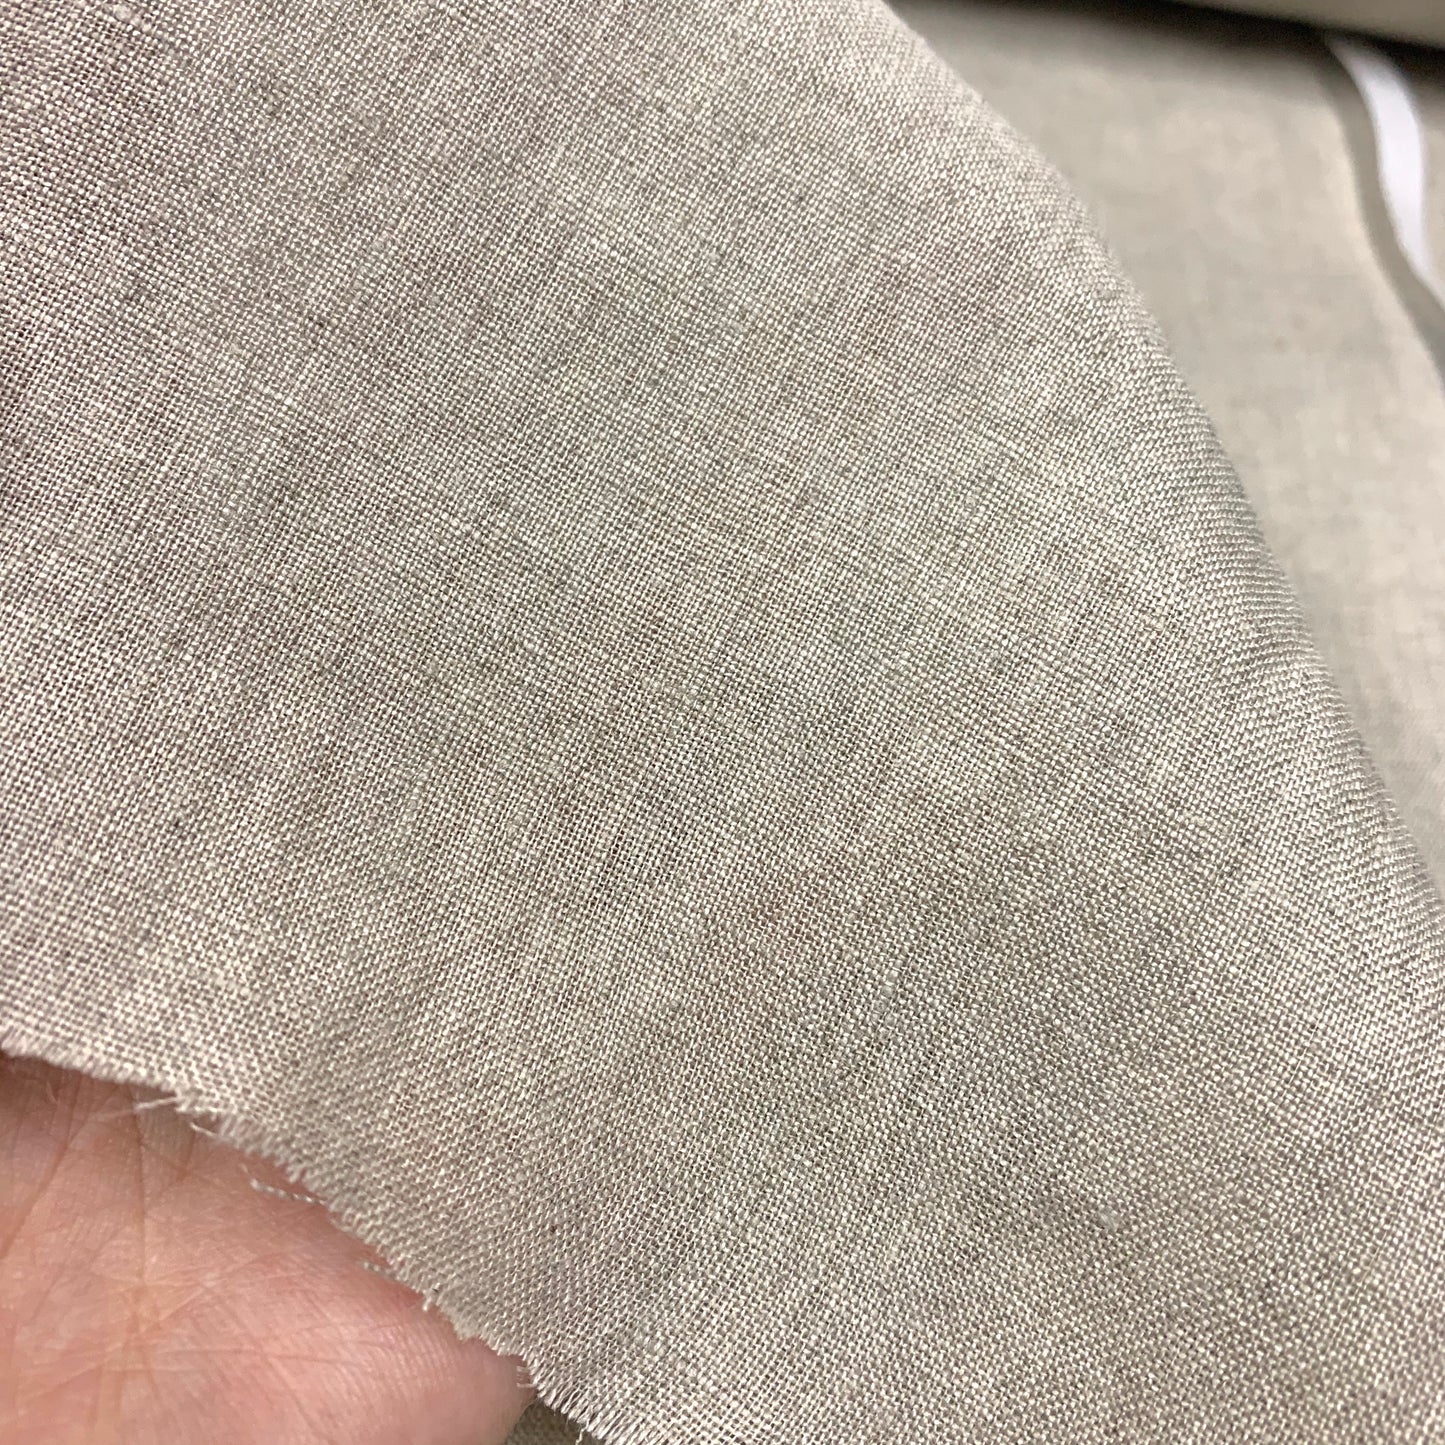 [日本] 淨色柔軟加工純麻布